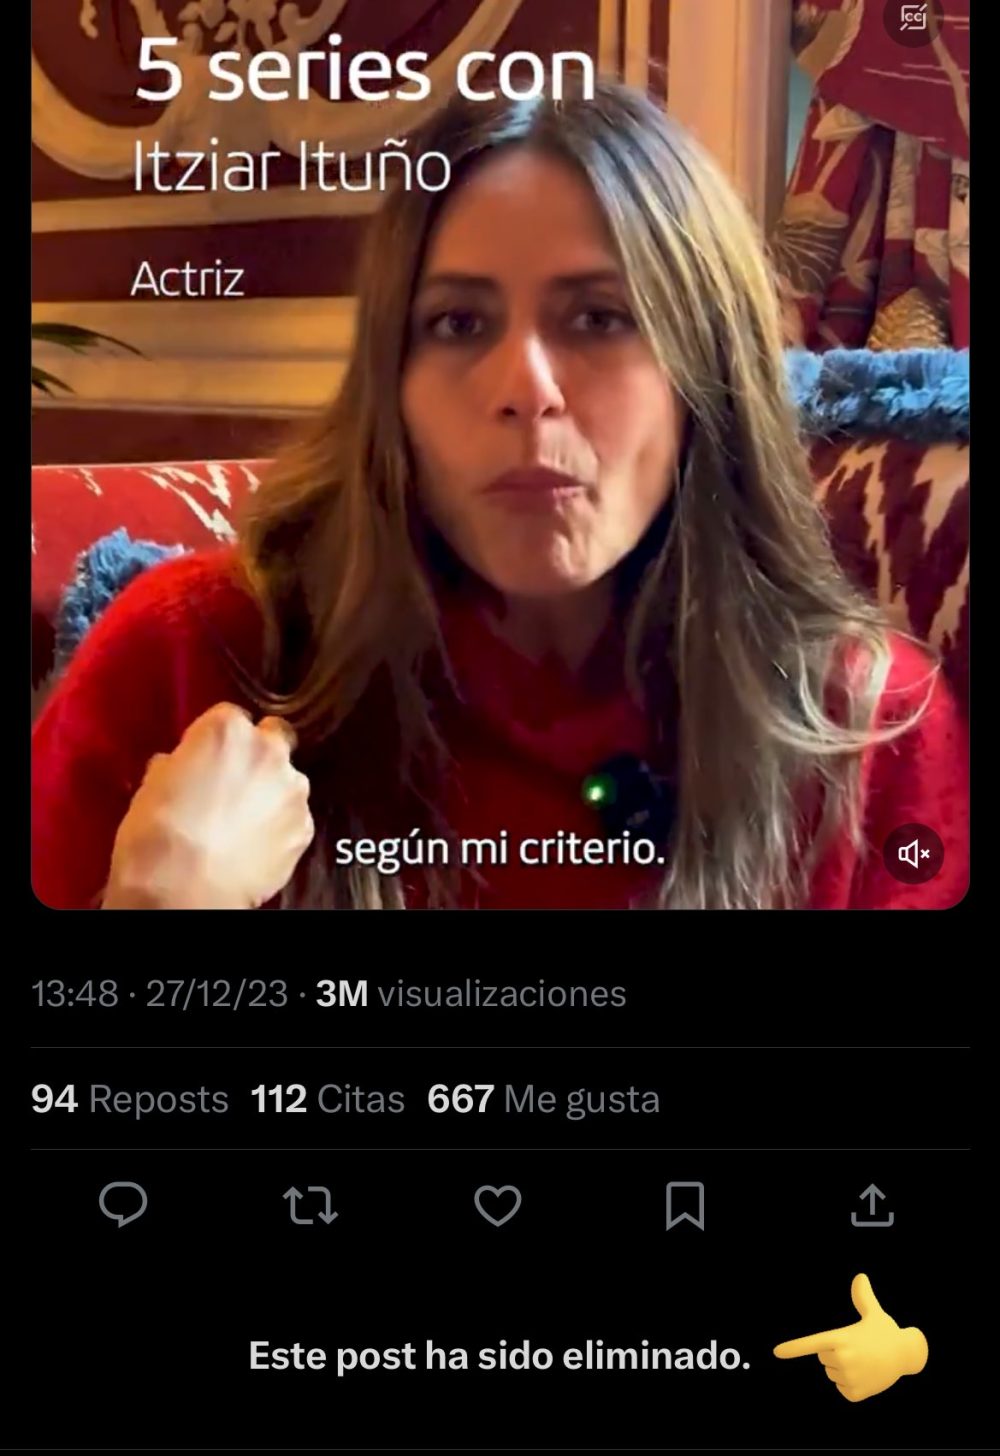 El concesionario 'BMW Lurauto' cesa a Itziar Ituño, la actriz que encabezó la marcha de Bilbao por la liberación de los presos de la banda terrorista ETA, después del boicot en redes sociales contra BMW.